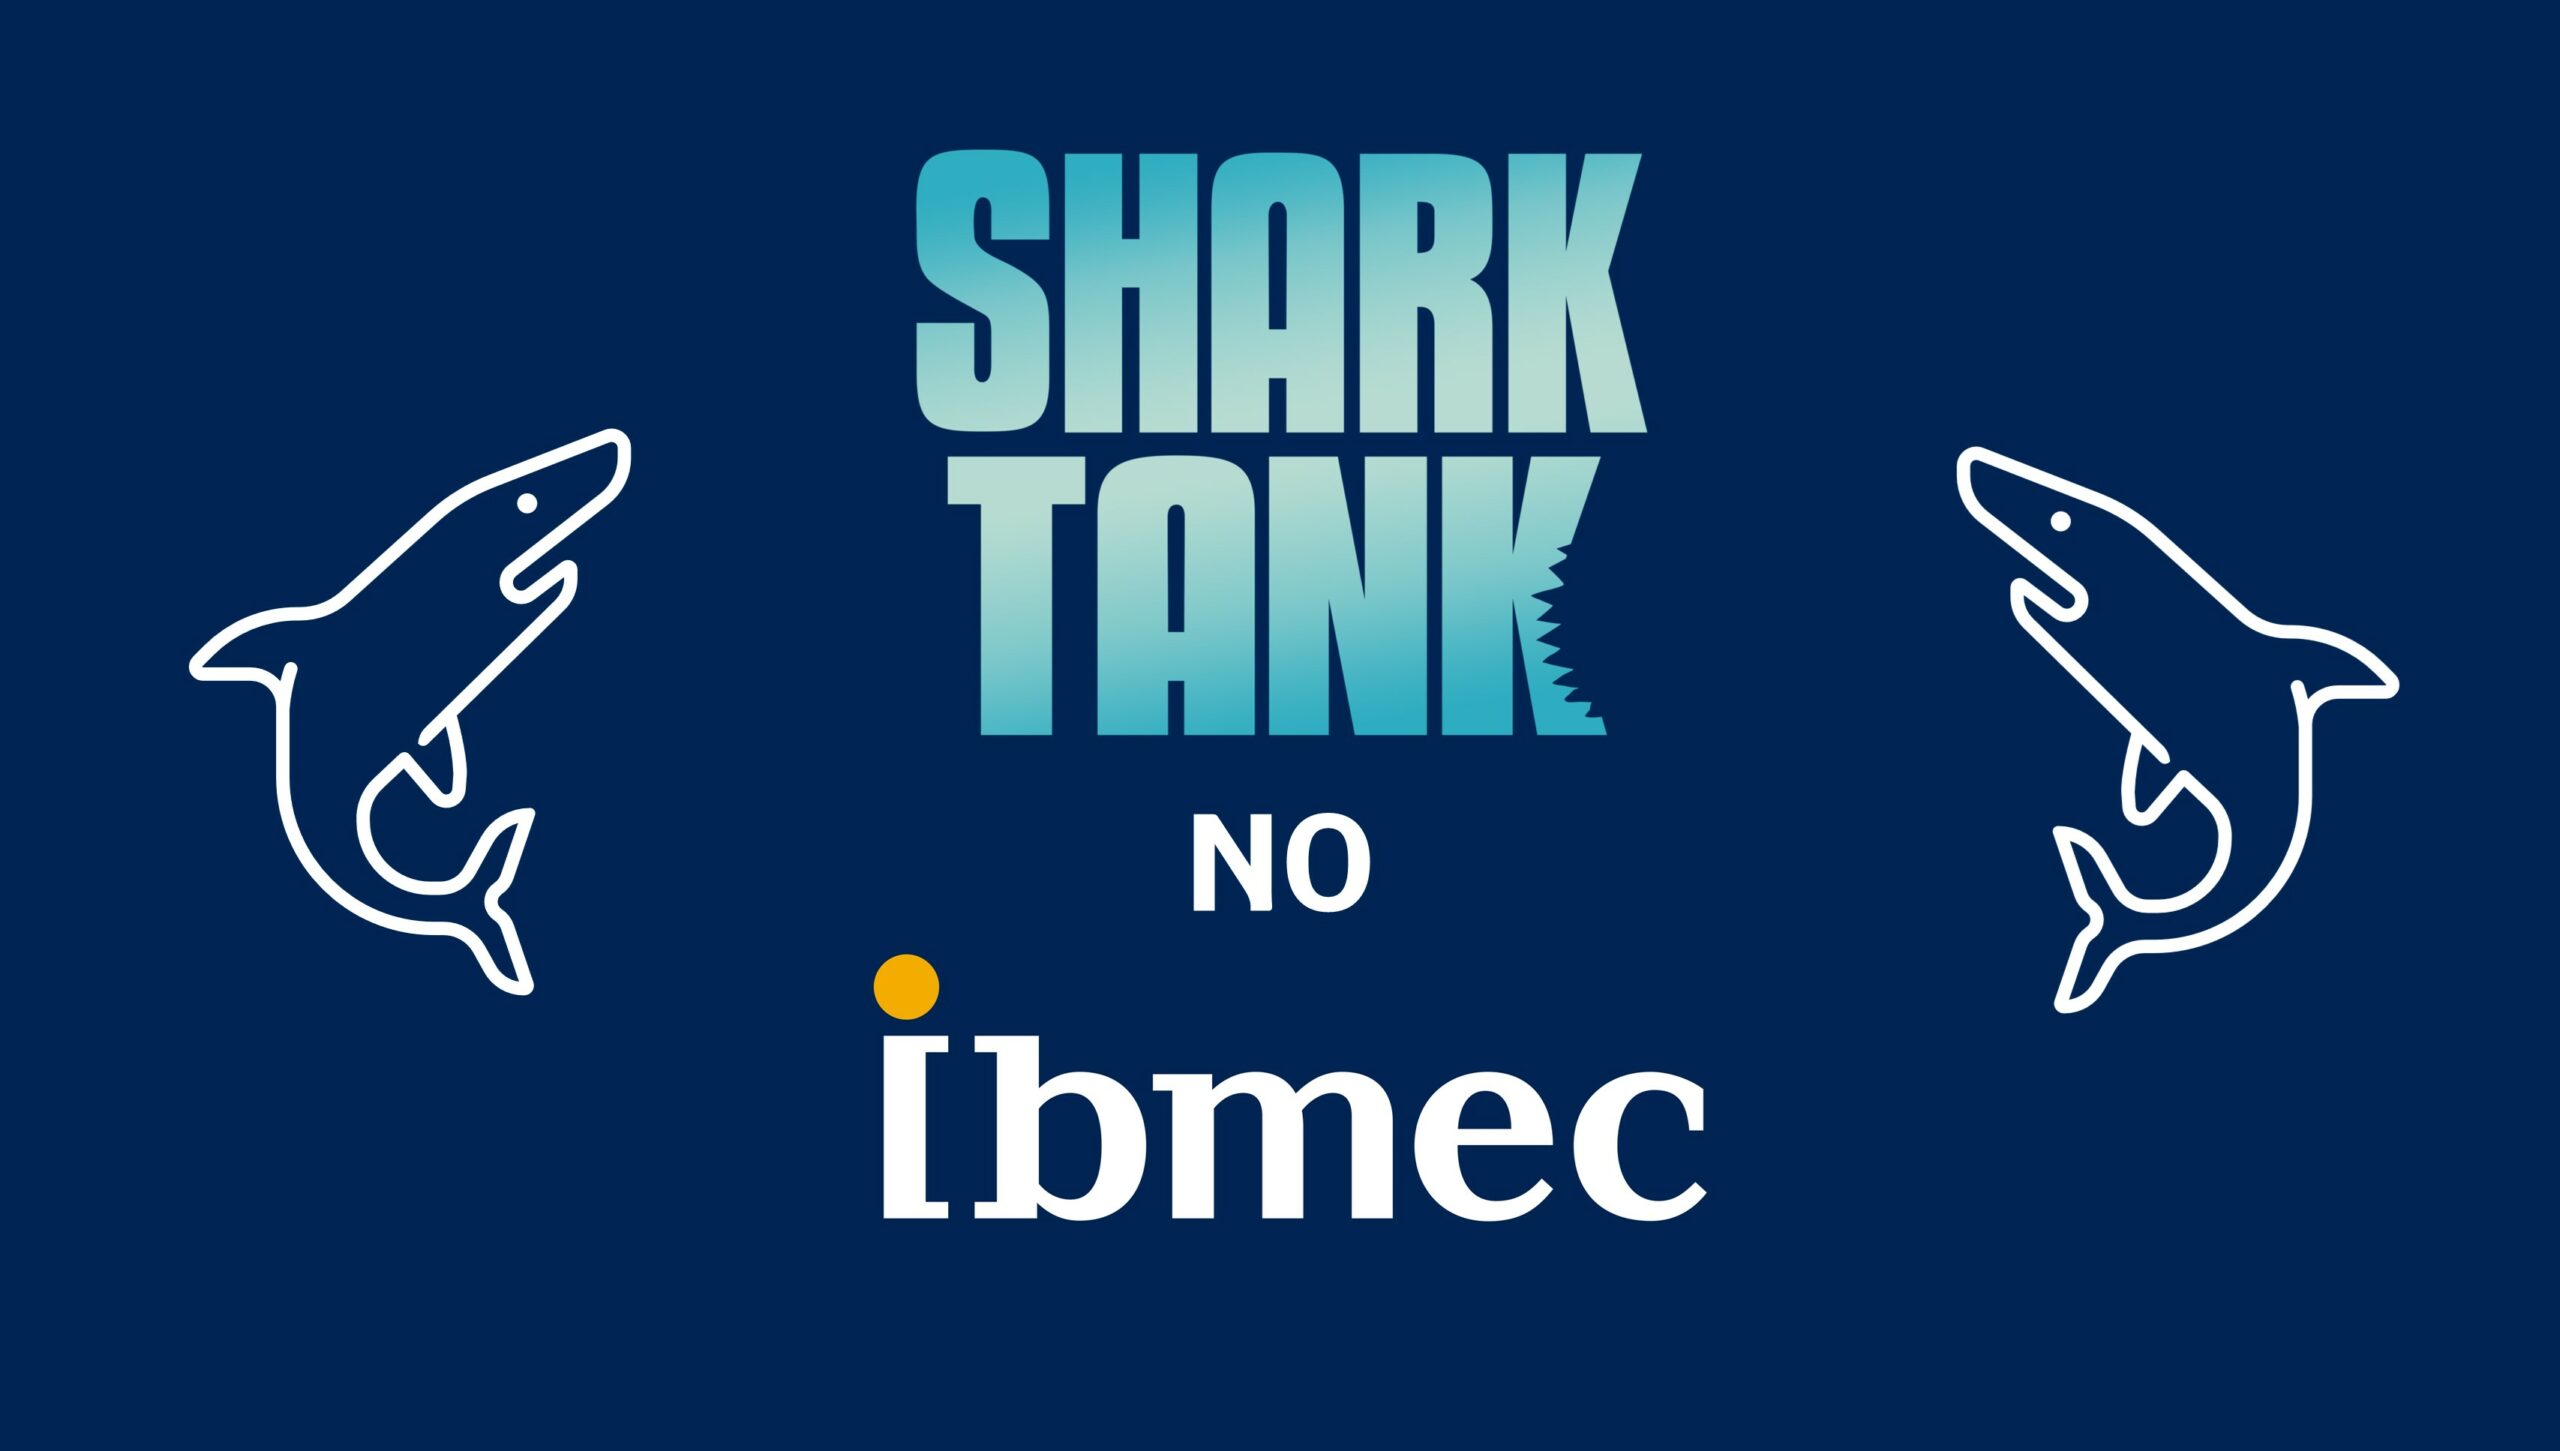 Shark Tank Brasil no Ibmec - Participe do evento com 4 Sharks - Ibmec  Insights